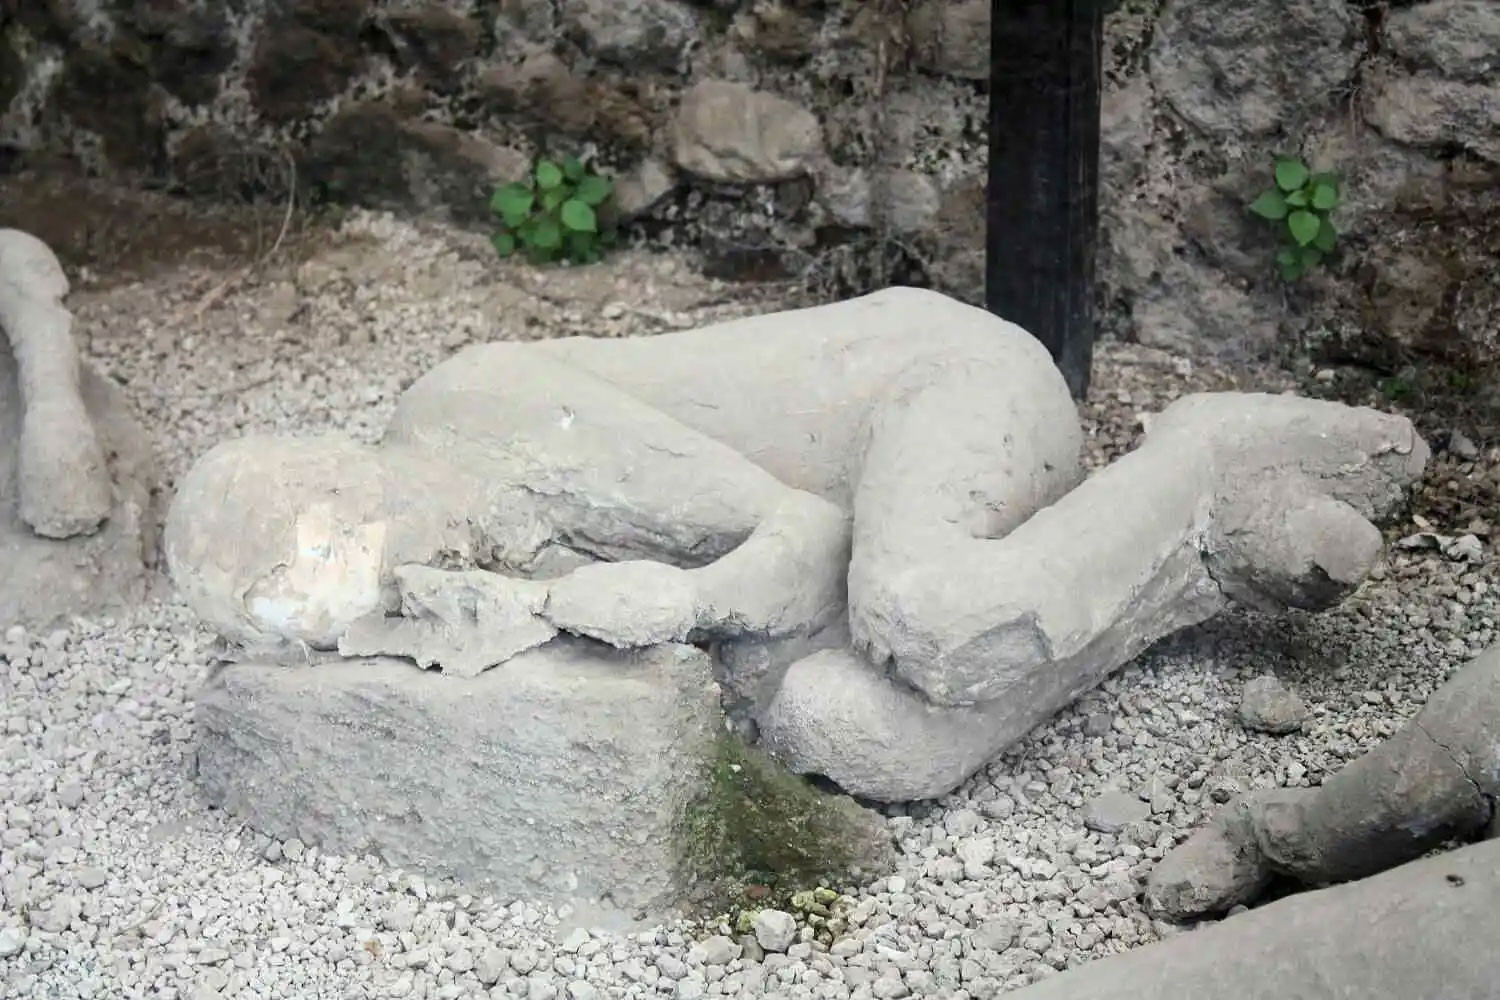 Ulaş Utku Bozdoğan: Pompeii'Nin Taş Insan Cesetleri Ve Şaşırtan Gerçek: Onlar Aslında Insan Cesedi Değil 1